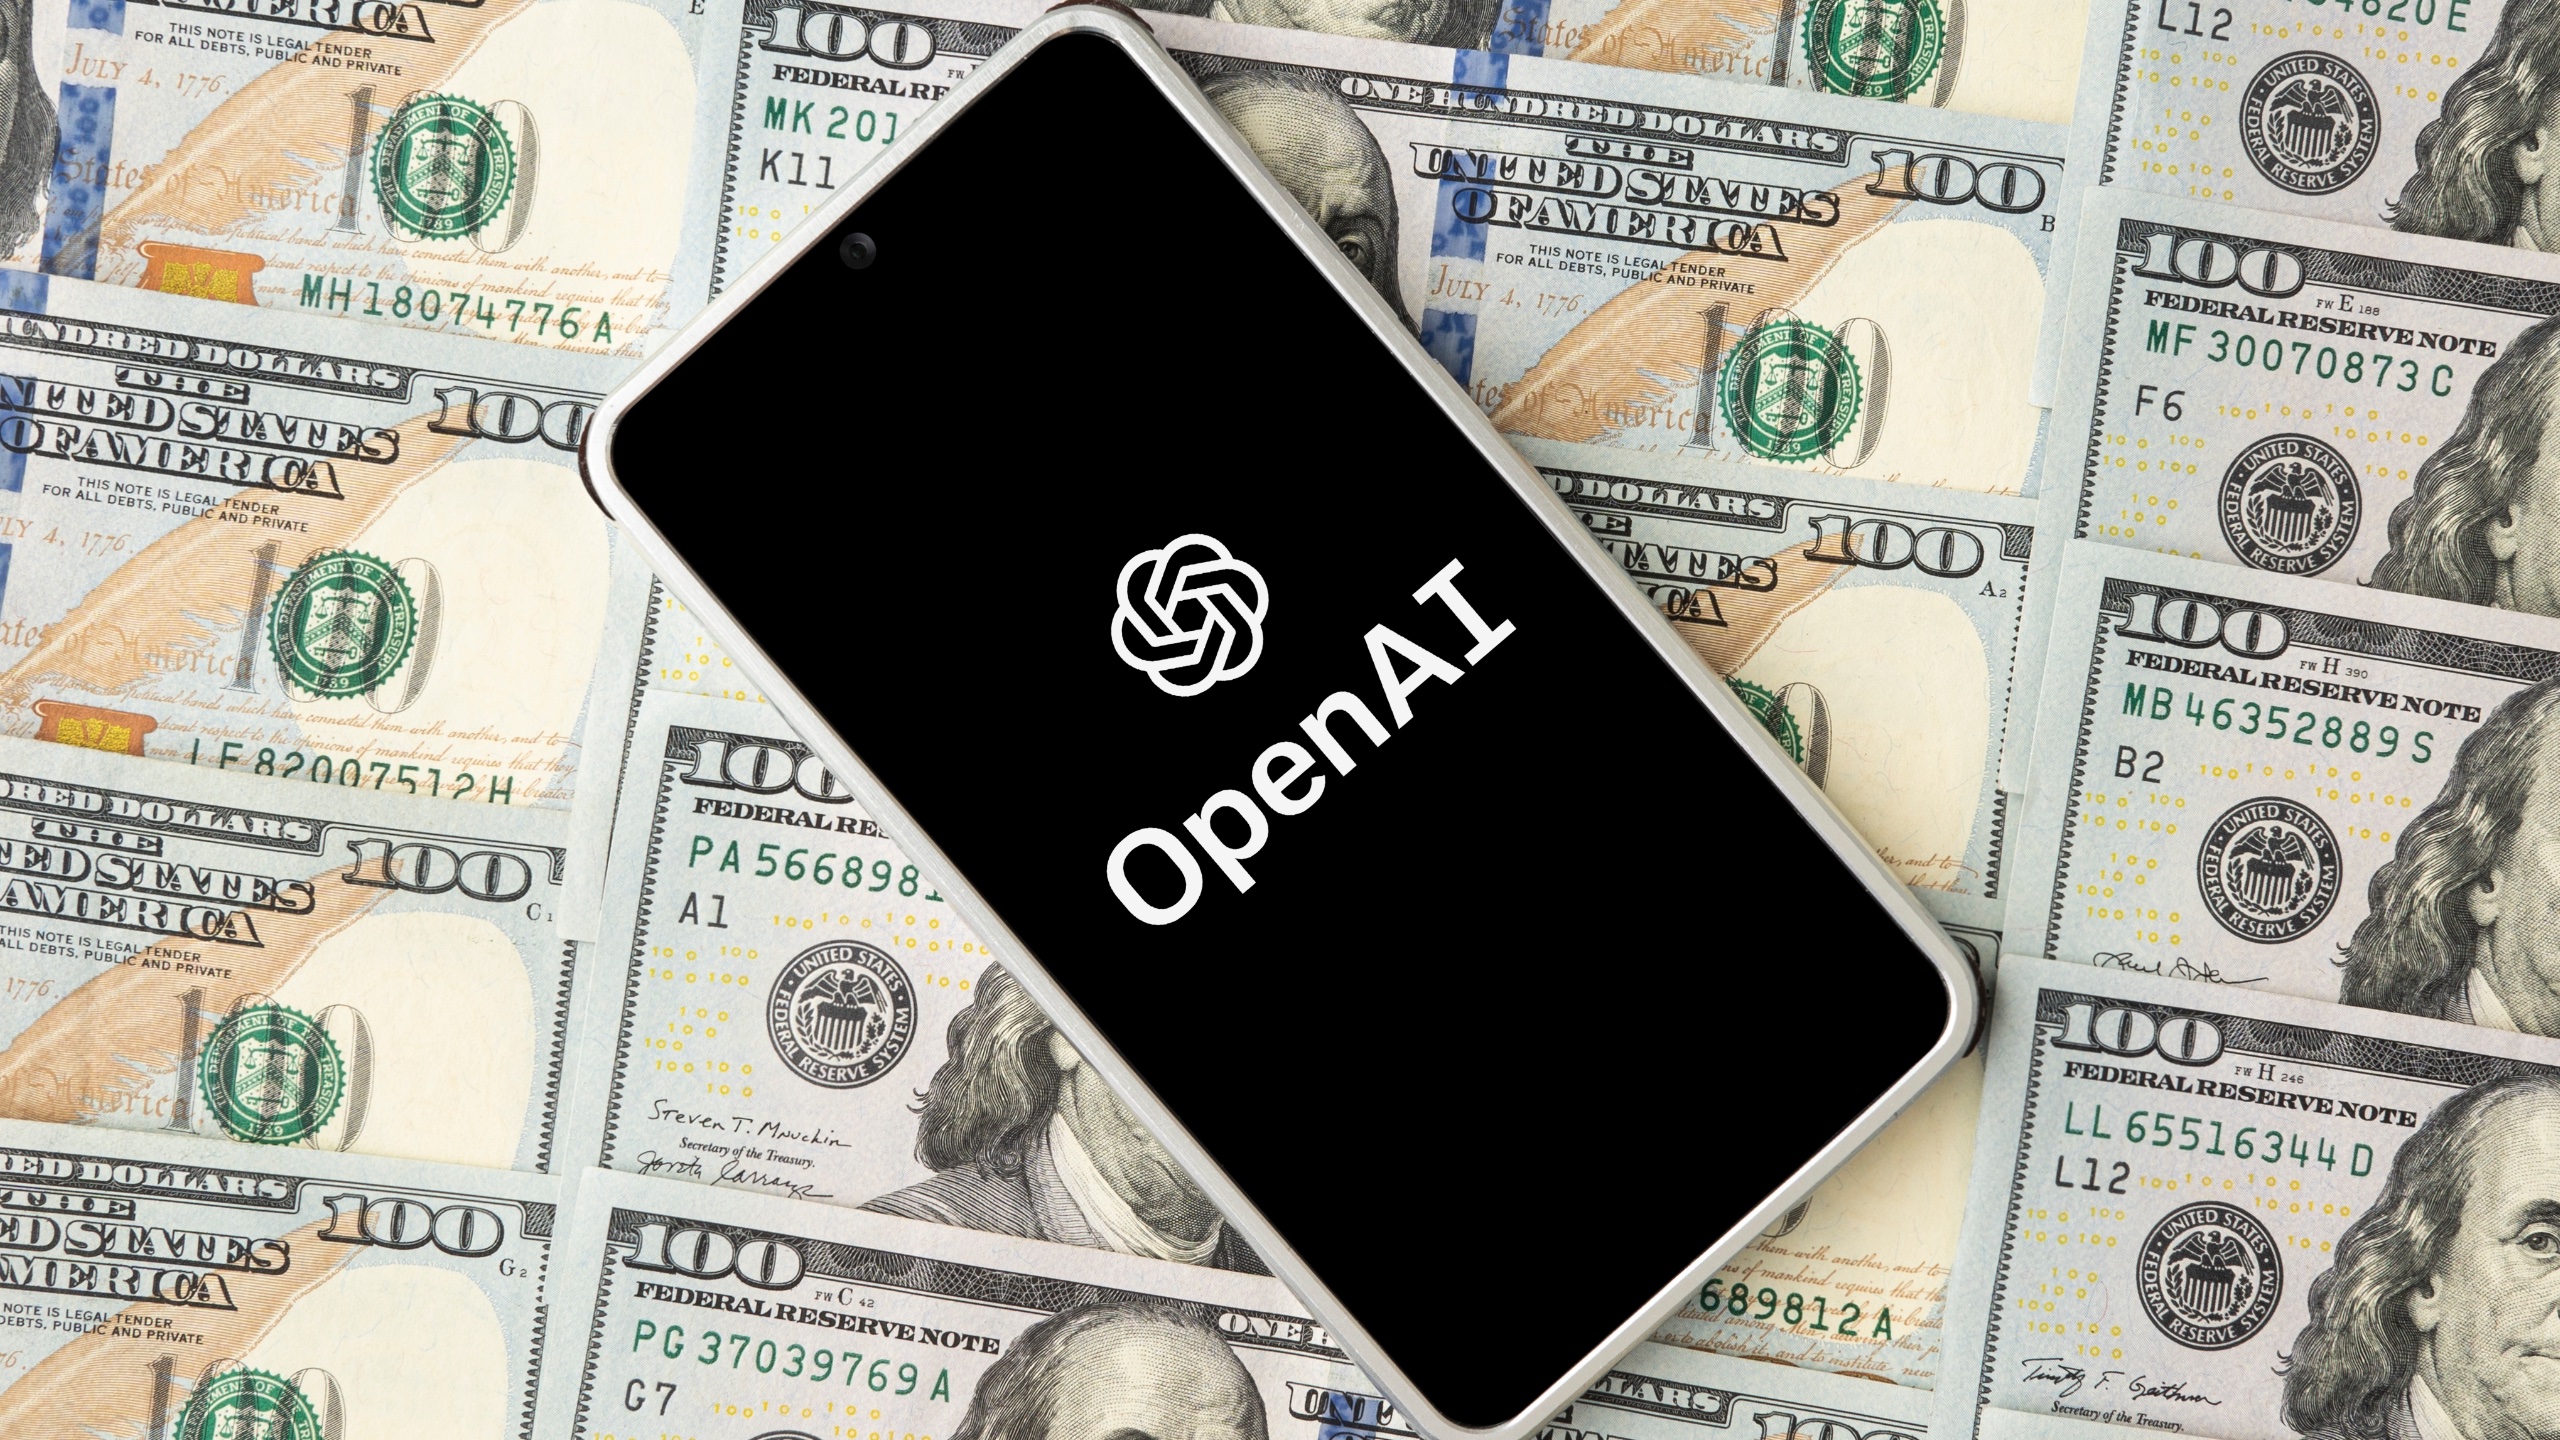 OpenAI alcanza unos ingresos de 1.6 millones de dólares mientras Anthropic apunta a 850 millones de dólares en 2024